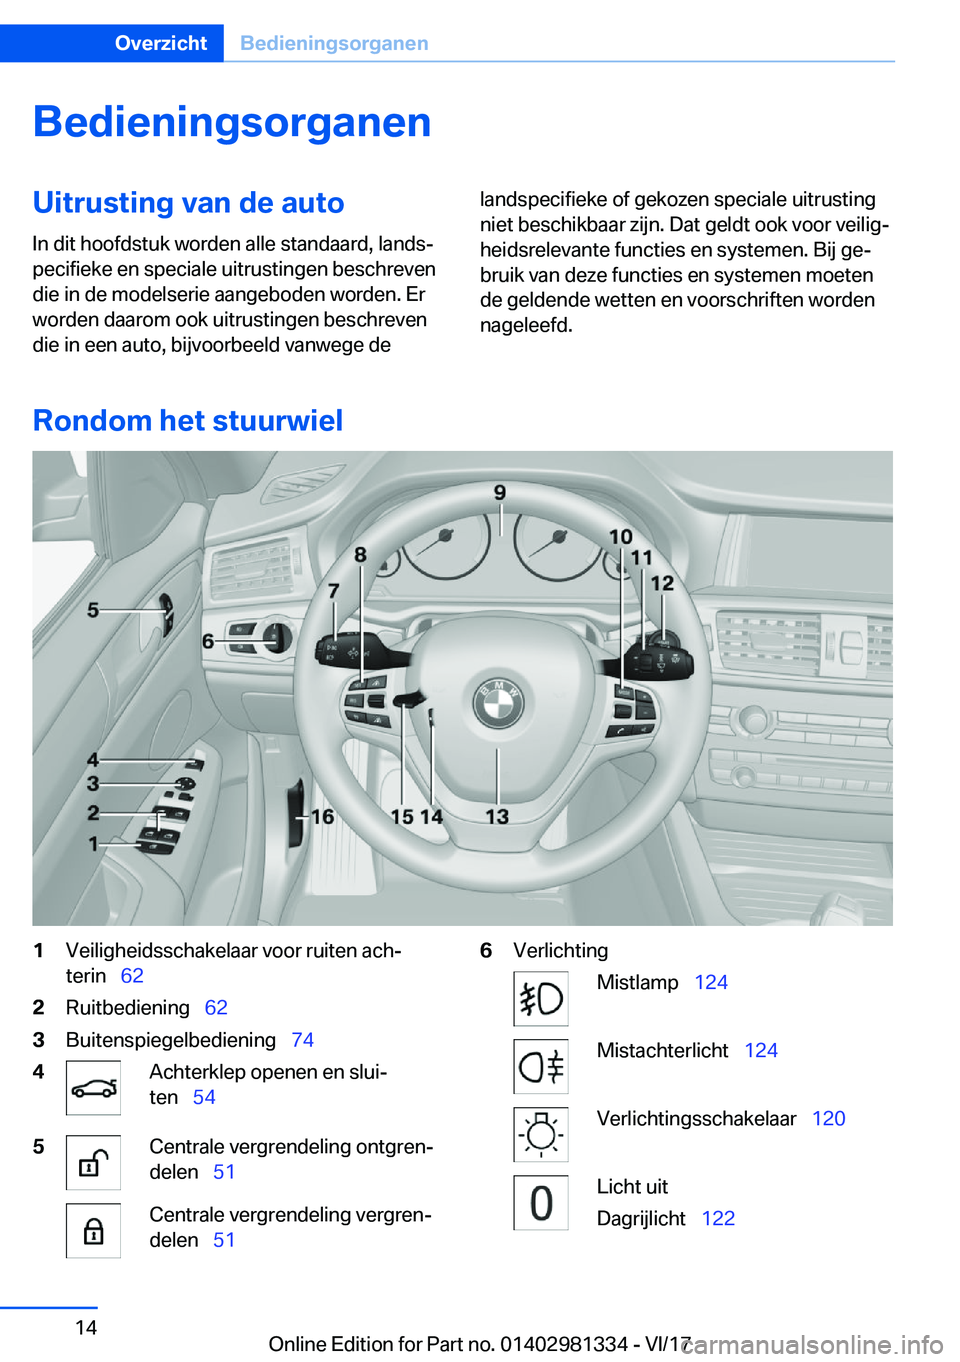 BMW X4 2018  Instructieboekjes (in Dutch) �B�e�d�i�e�n�i�n�g�s�o�r�g�a�n�e�n�U�i�t�r�u�s�t�i�n�g��v�a�n��d�e��a�u�t�o�I�n� �d�i�t� �h�o�o�f�d�s�t�u�k� �w�o�r�d�e�n� �a�l�l�e� �s�t�a�n�d�a�a�r�d�,� �l�a�n�d�sj
�p�e�c�i�f�i�e�k�e� �e�n� �s�